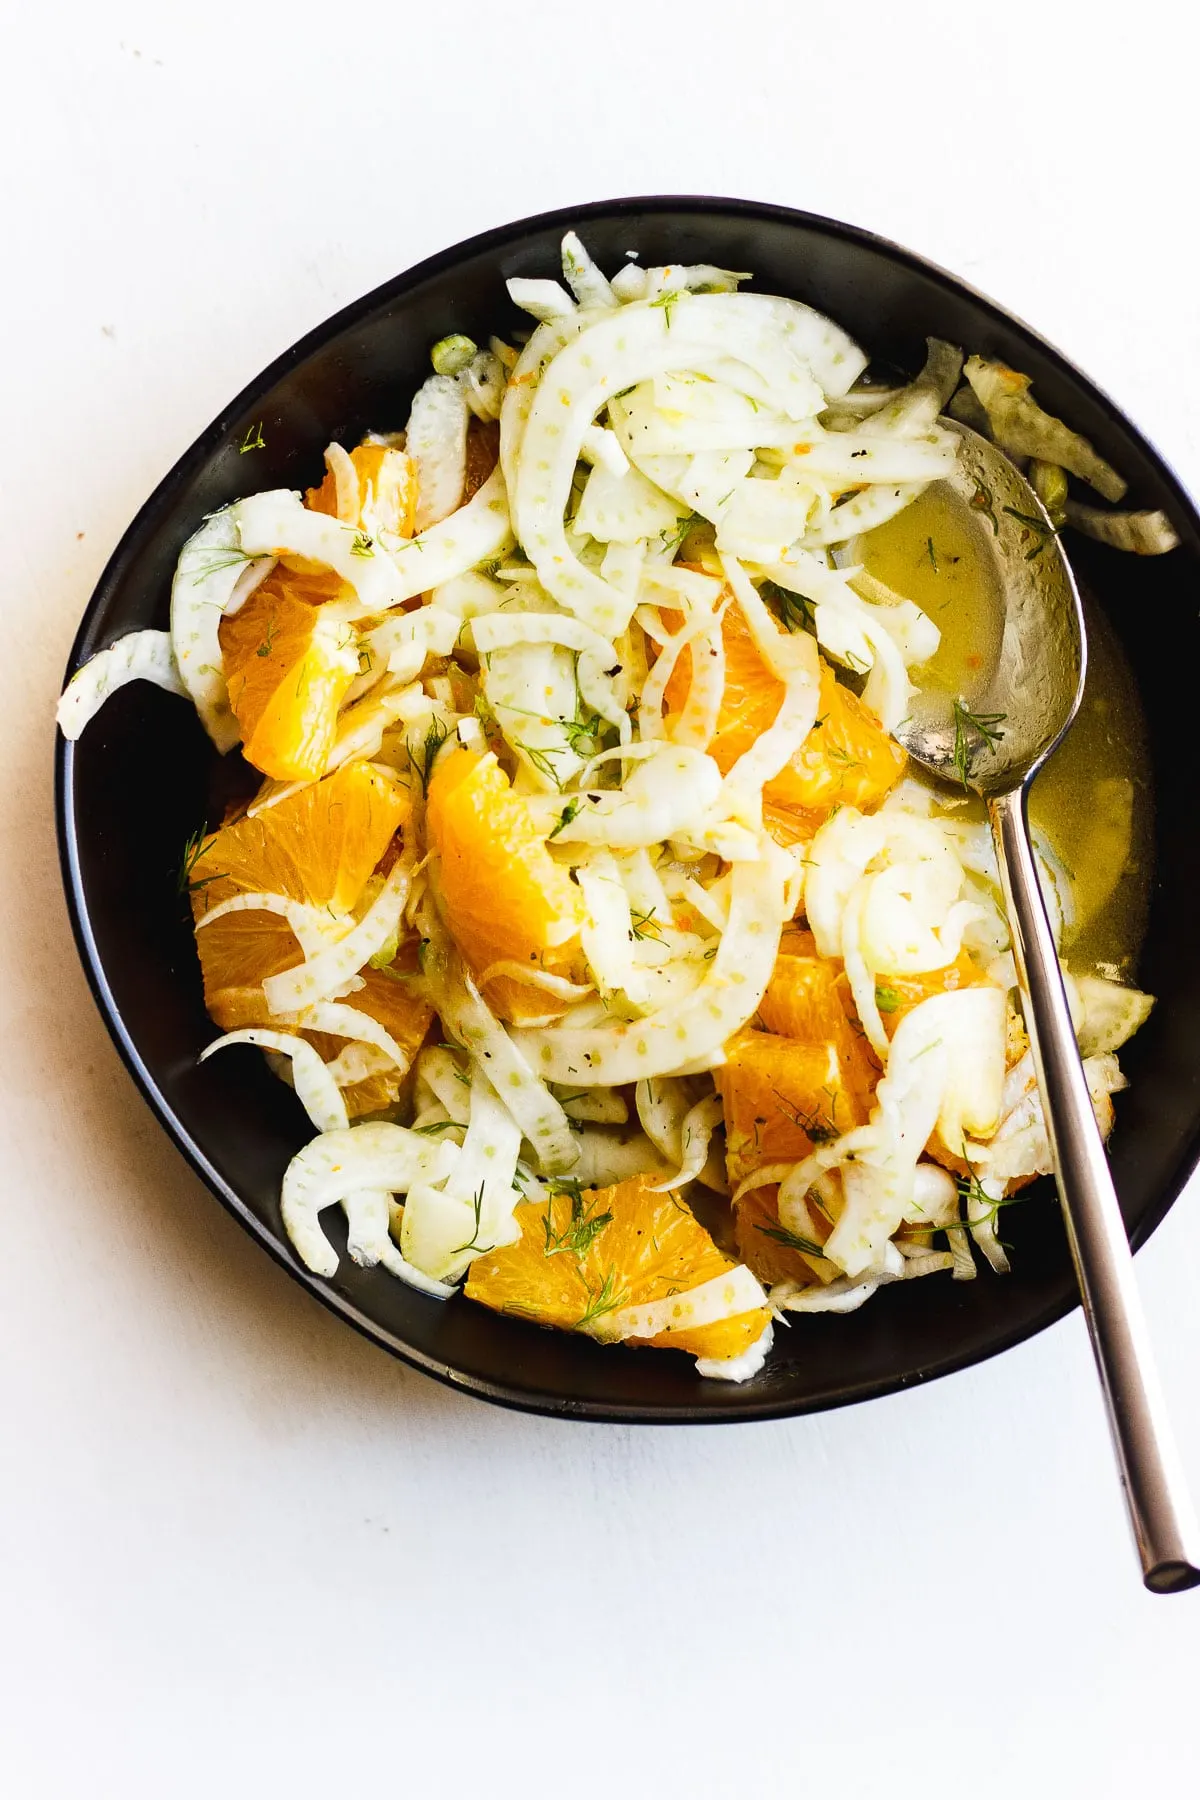 fennel orange salad in bowl